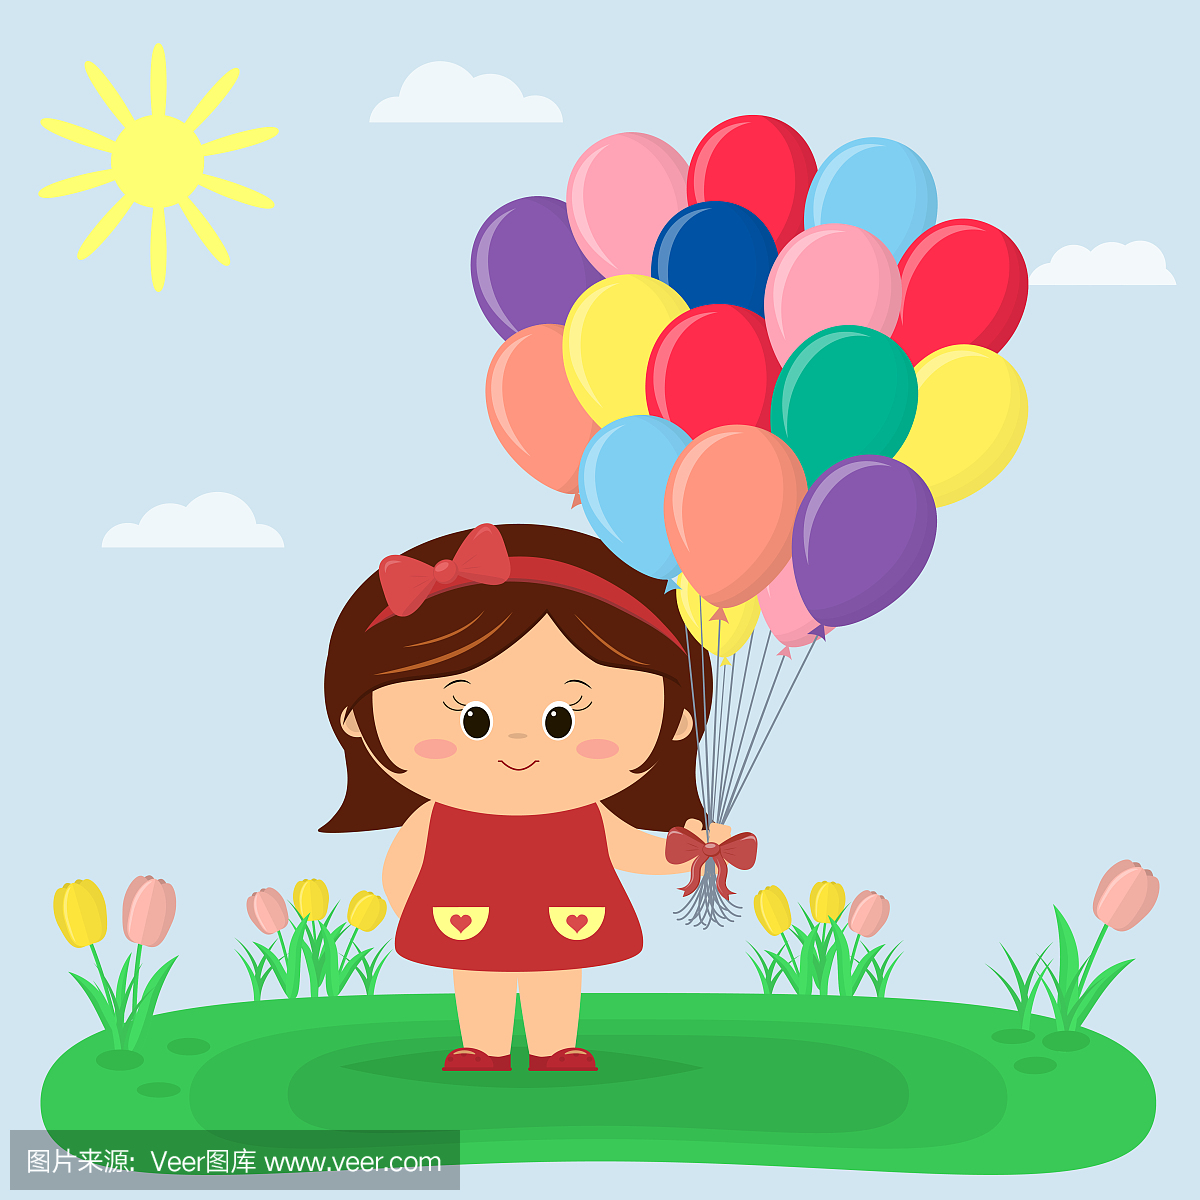 一个穿红裙子和蝴蝶结的女孩拿着气球,郁金香